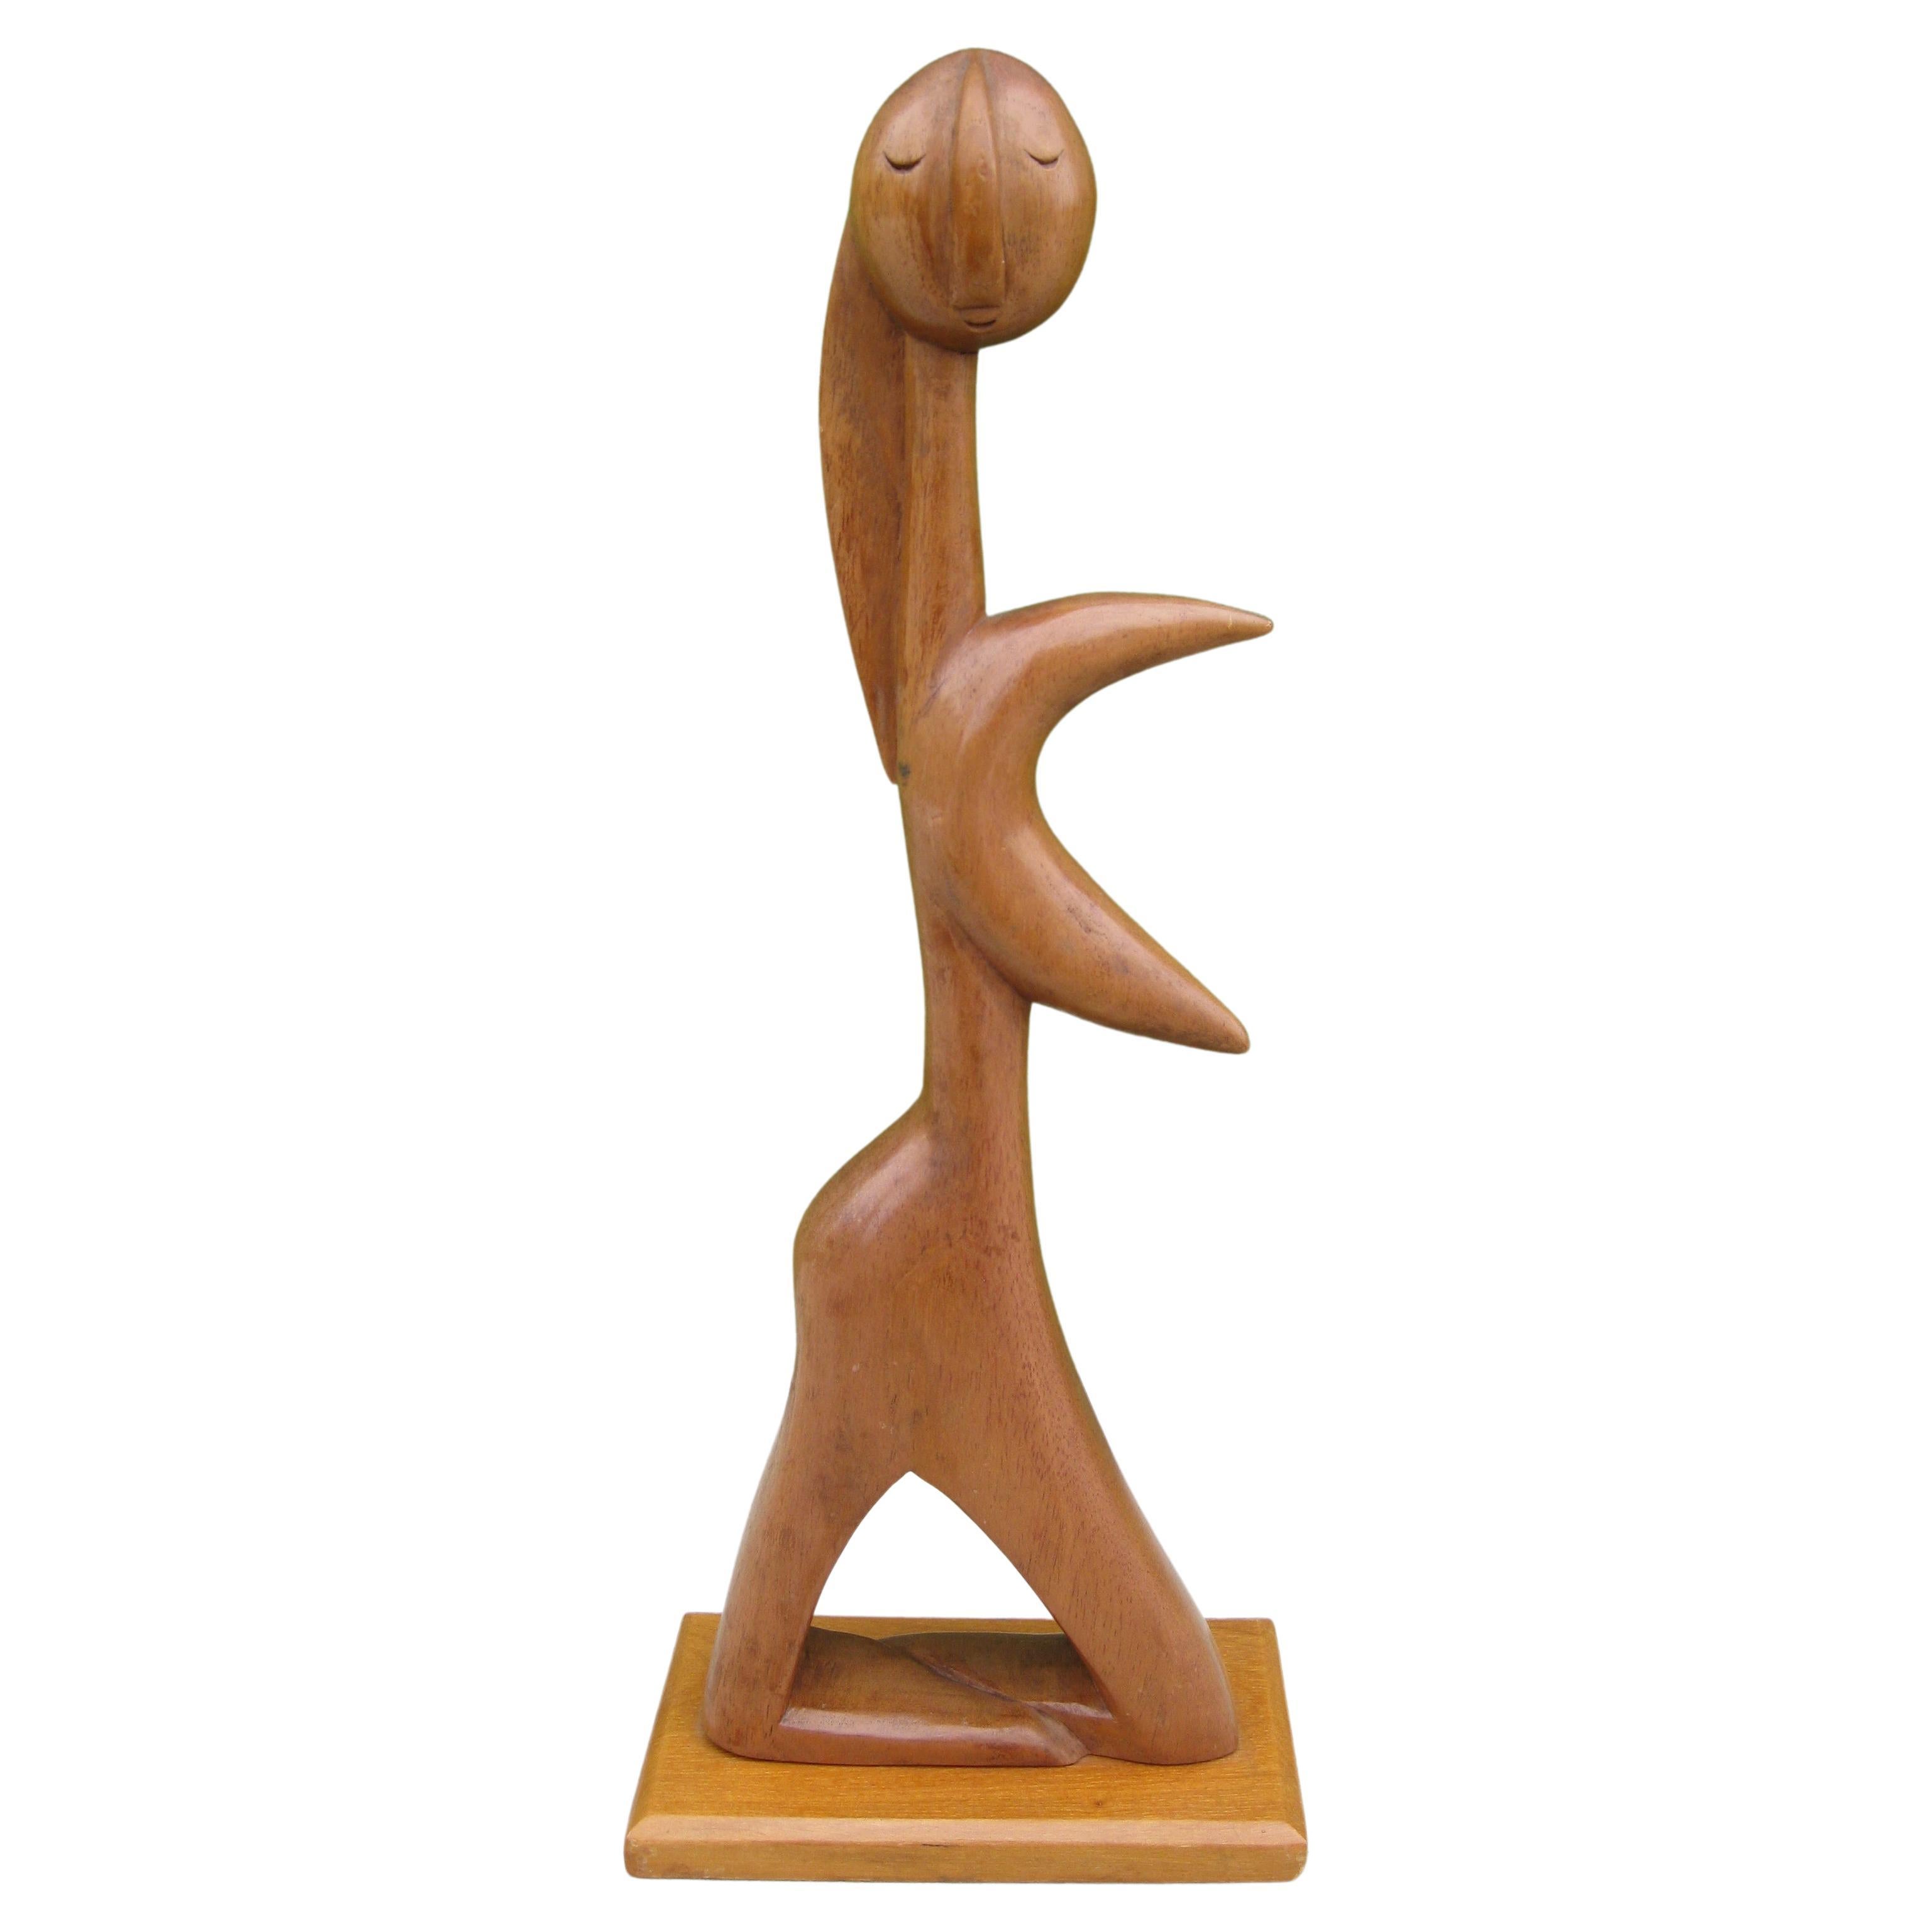 Sculpture figurative abstraite en bois sculpté de l'artiste mexicain J.G Casas, années 1960